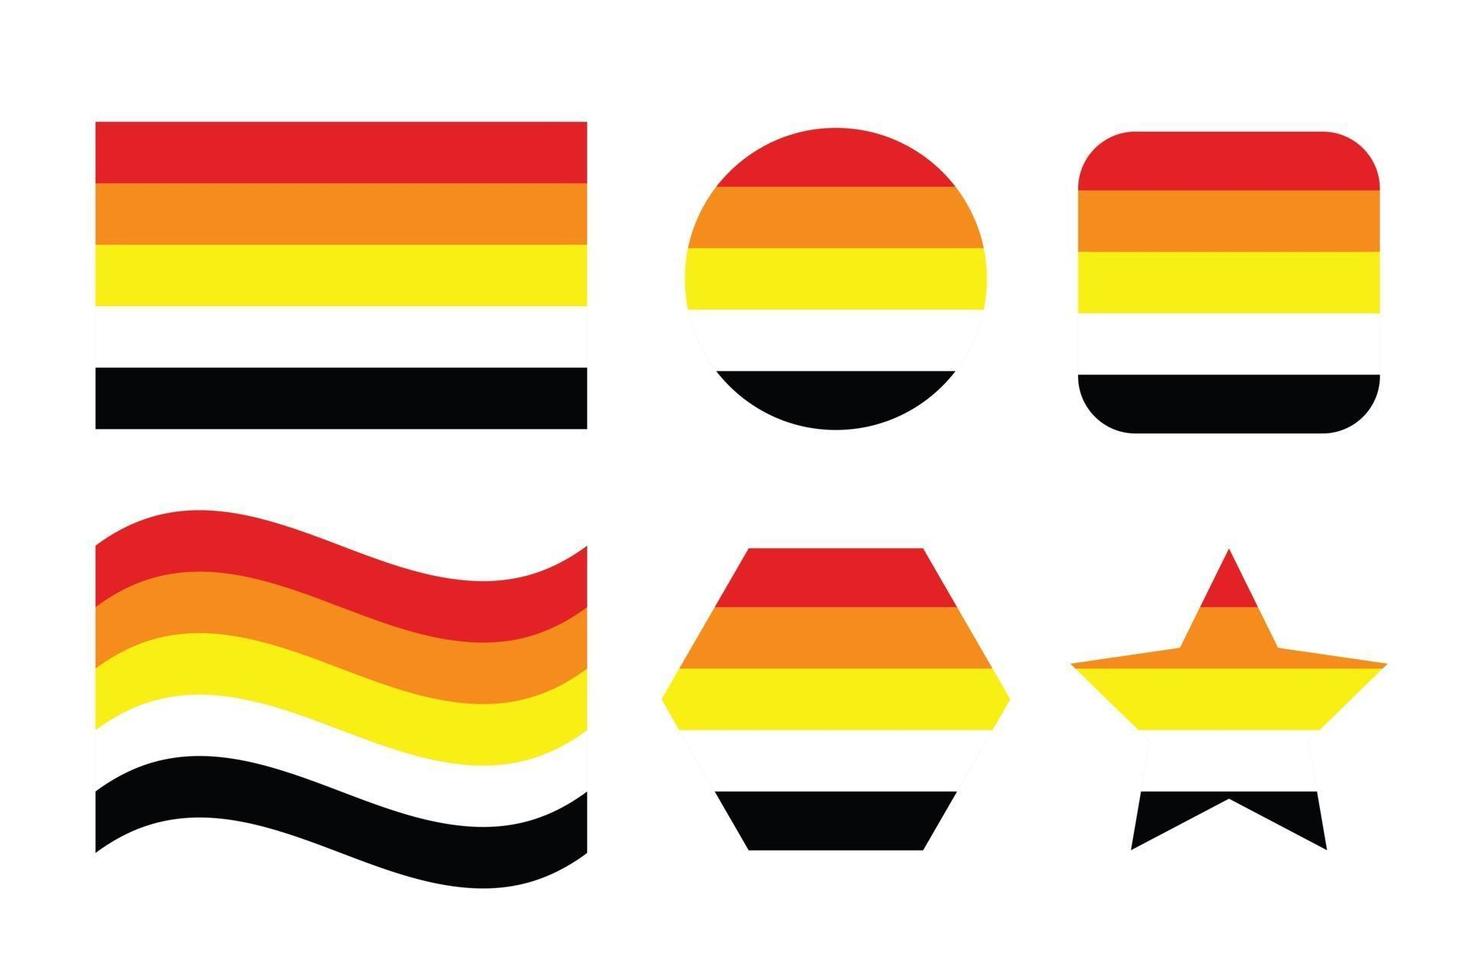 drapeau de la fierté lithsexuelle identité sexuelle drapeau de la fierté vecteur